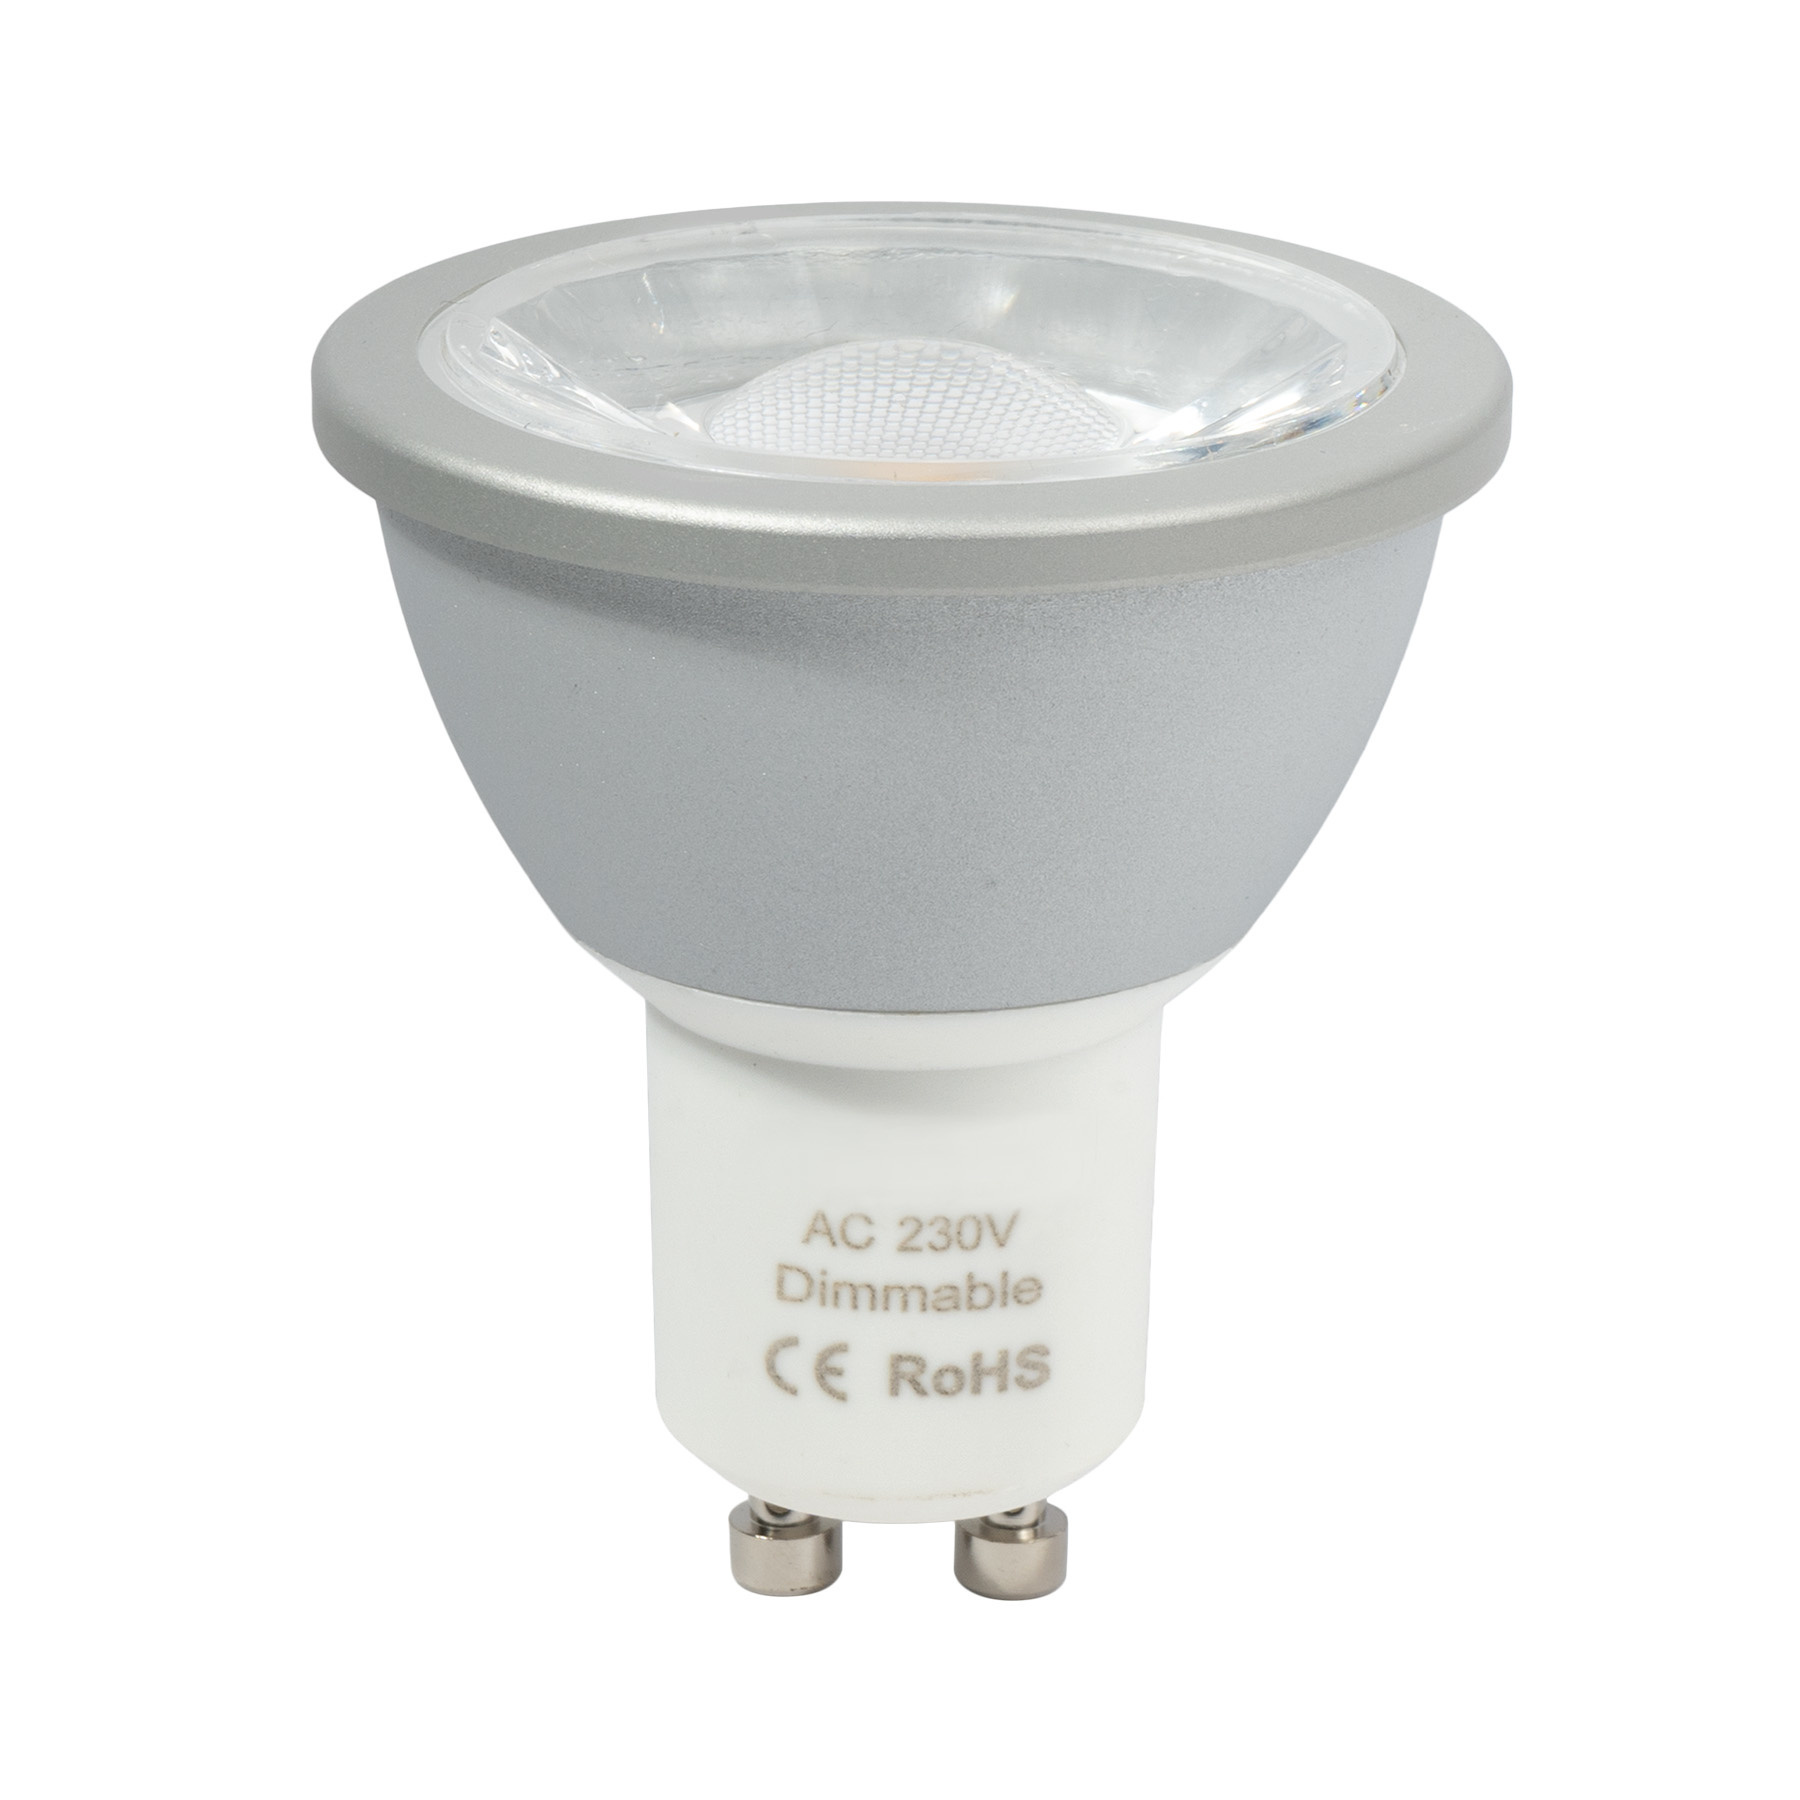 Ampoule LED MR16 blanc chaud 2700K/3000K pour éclairage extérieur